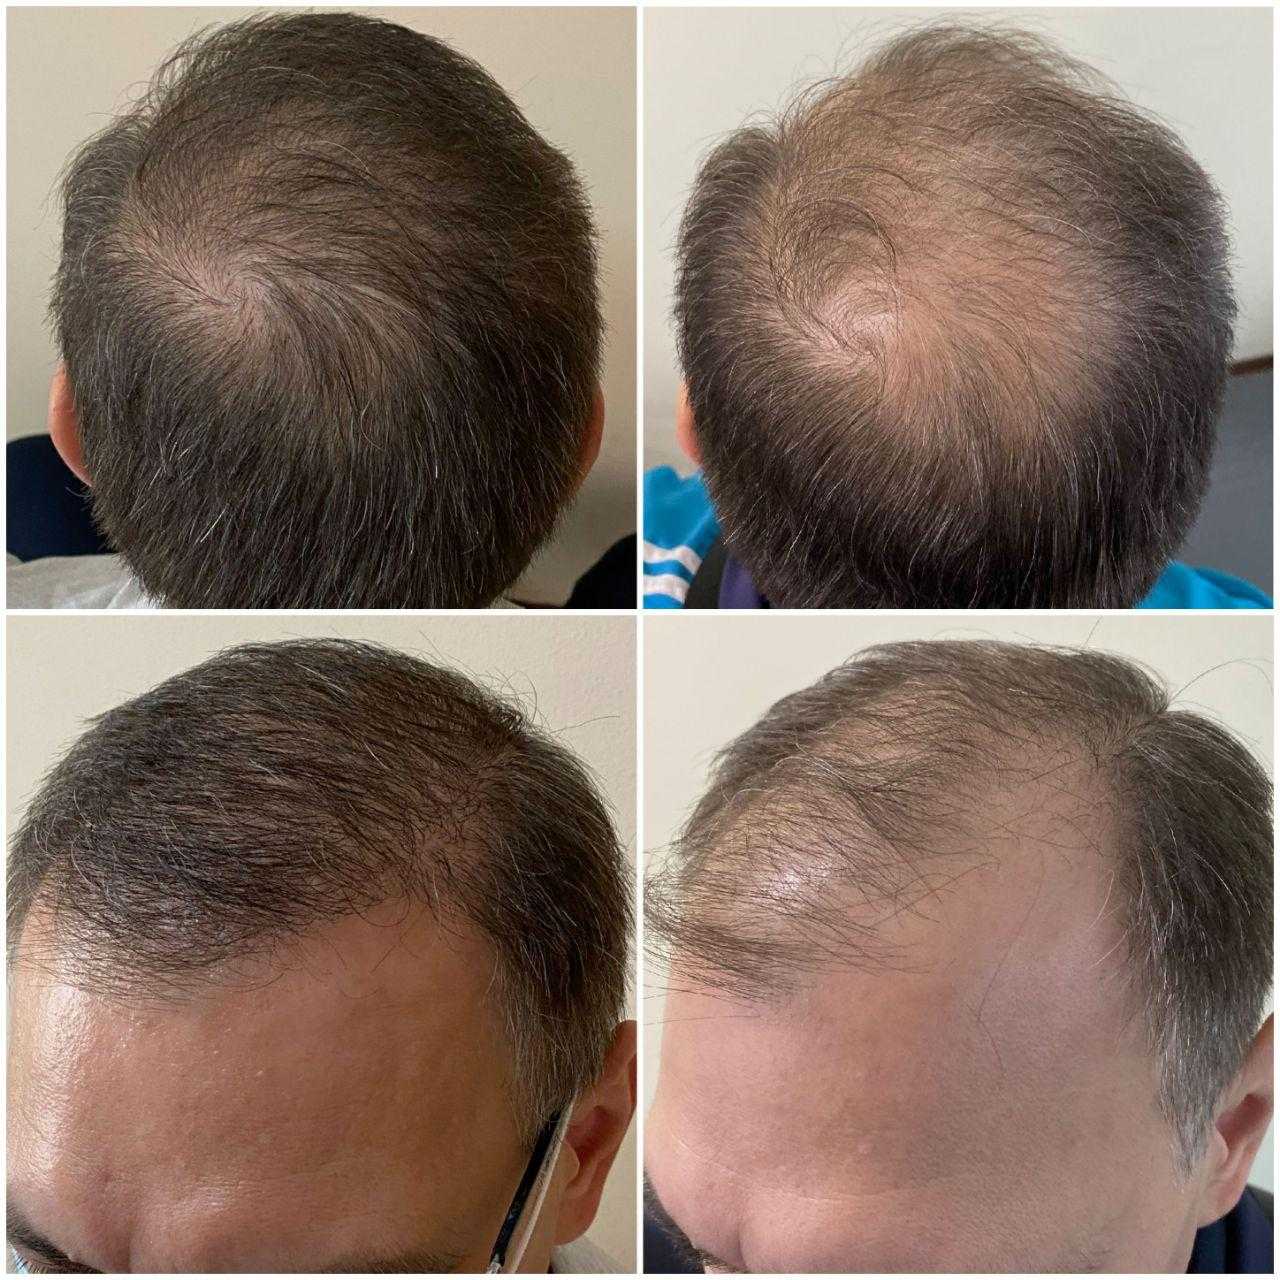 Пересадка волос в санкт петербурге. Графт трансплантация волос. Пересадка волос до и после. Трансплантация волос методом fue.